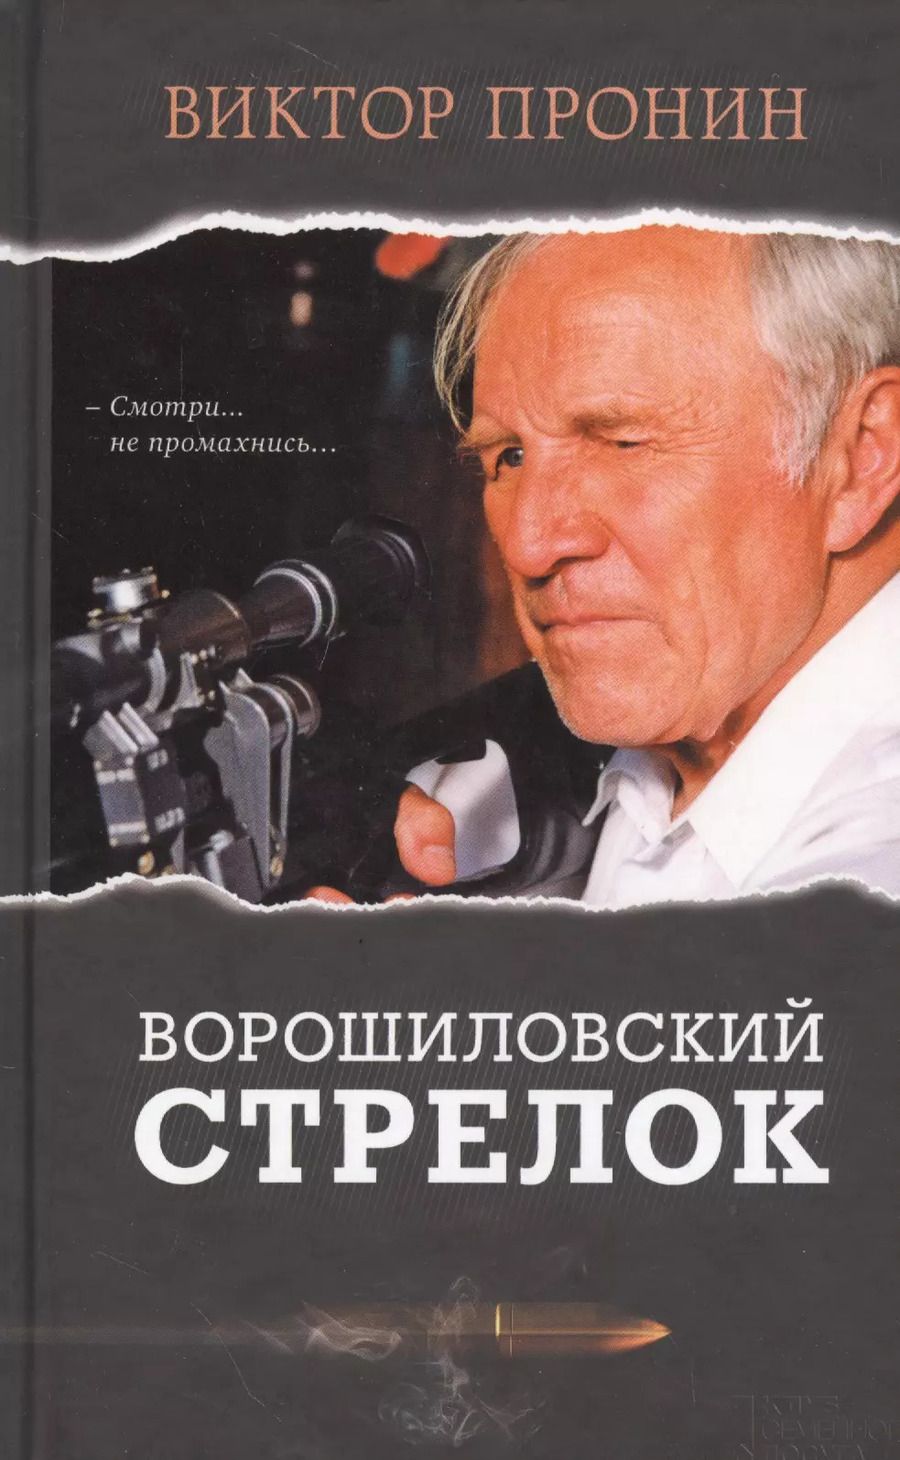 Обложка книги "Виктор Пронин: Ворошиловский стрелок"